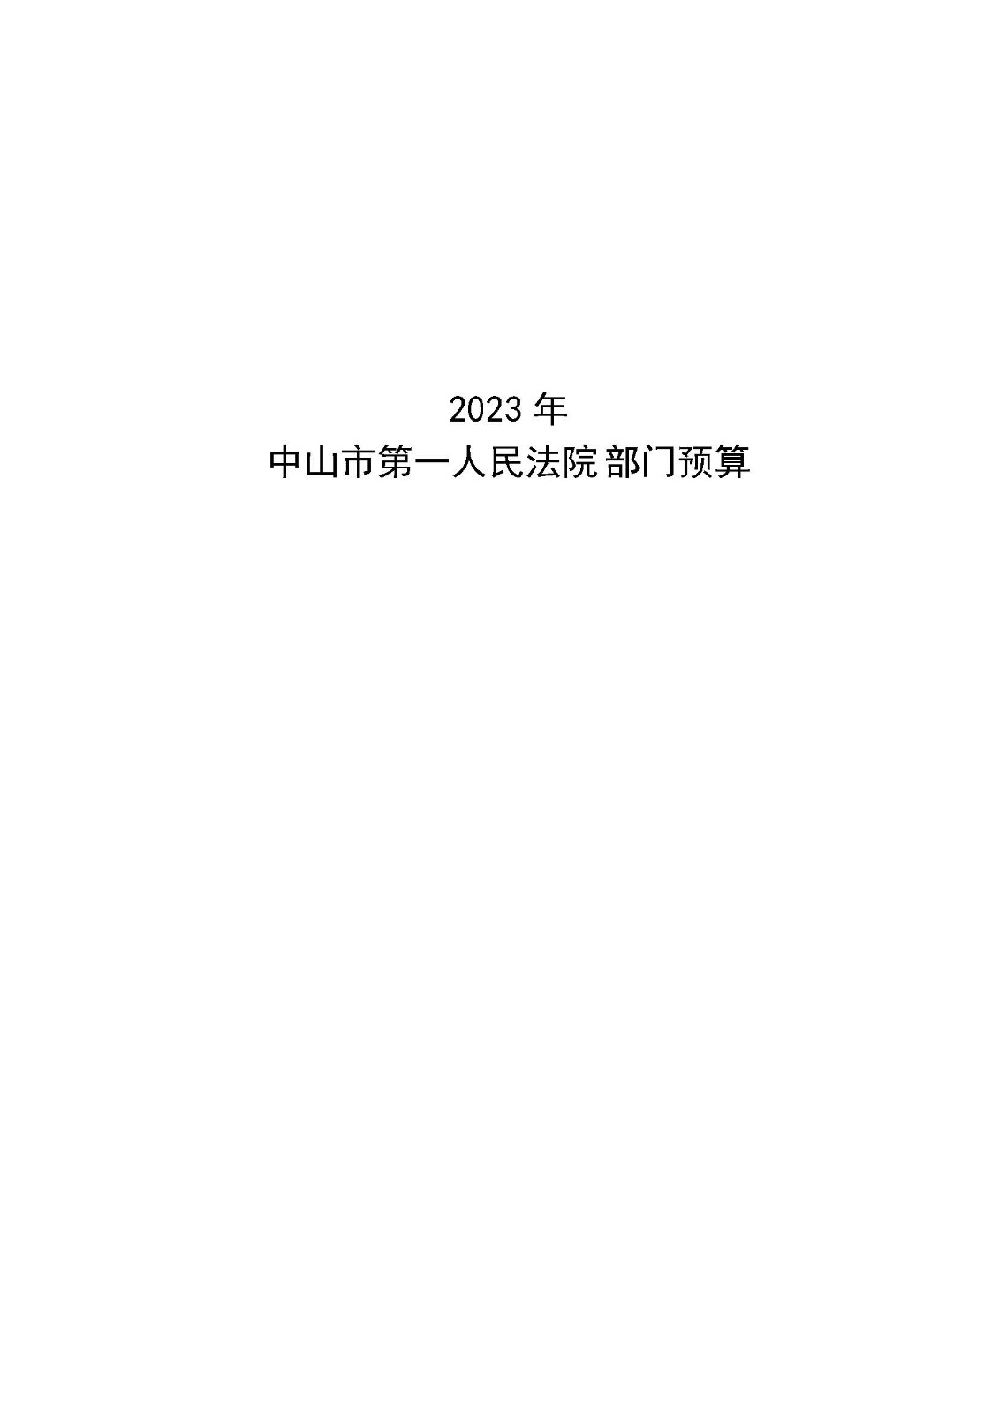 2023年中山市第一人民法院部门预算_页面_01.jpg